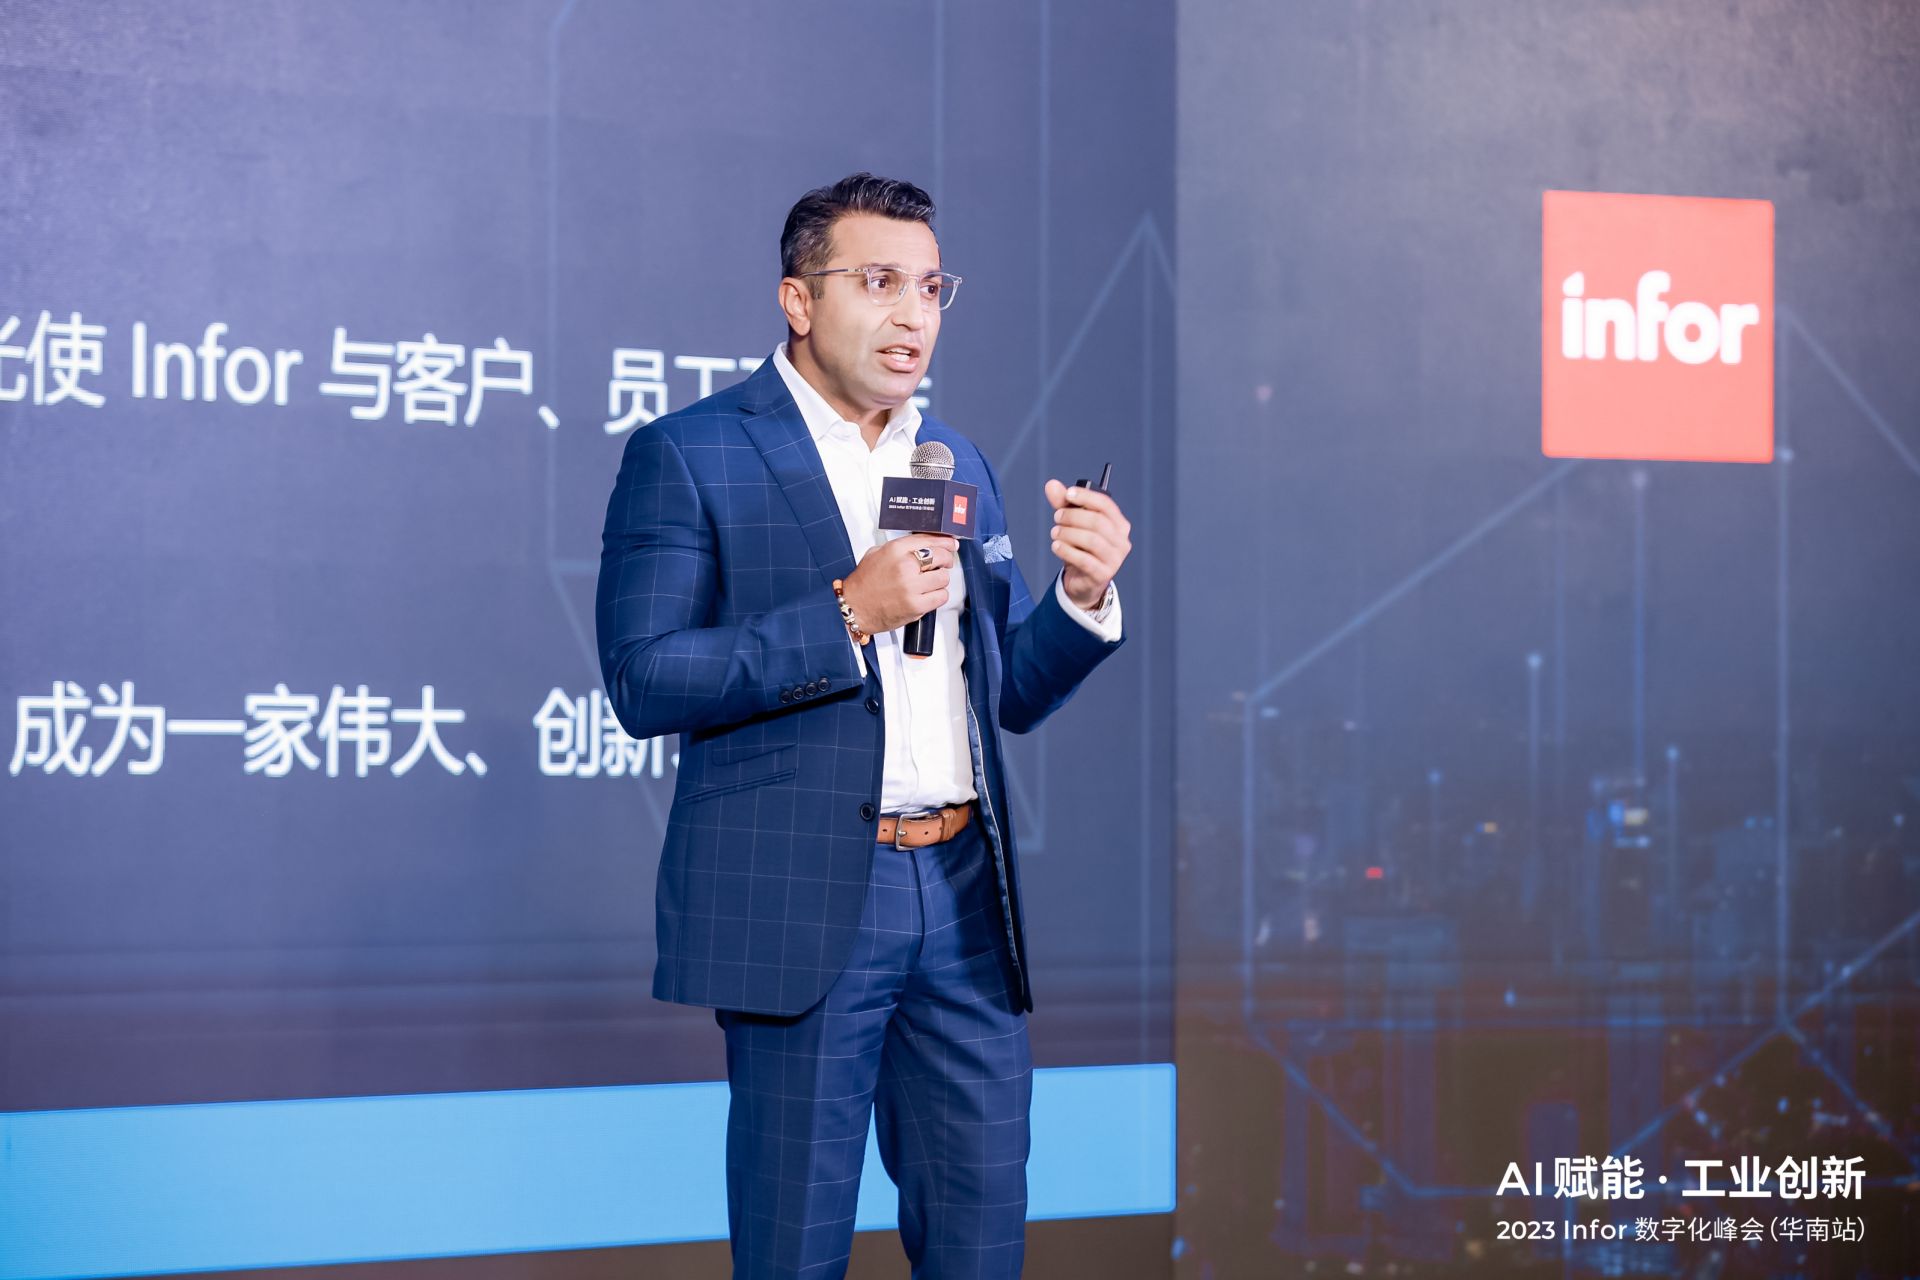 “AI赋能 工业创新”2023 Infor 数字化峰会华南站在深举行